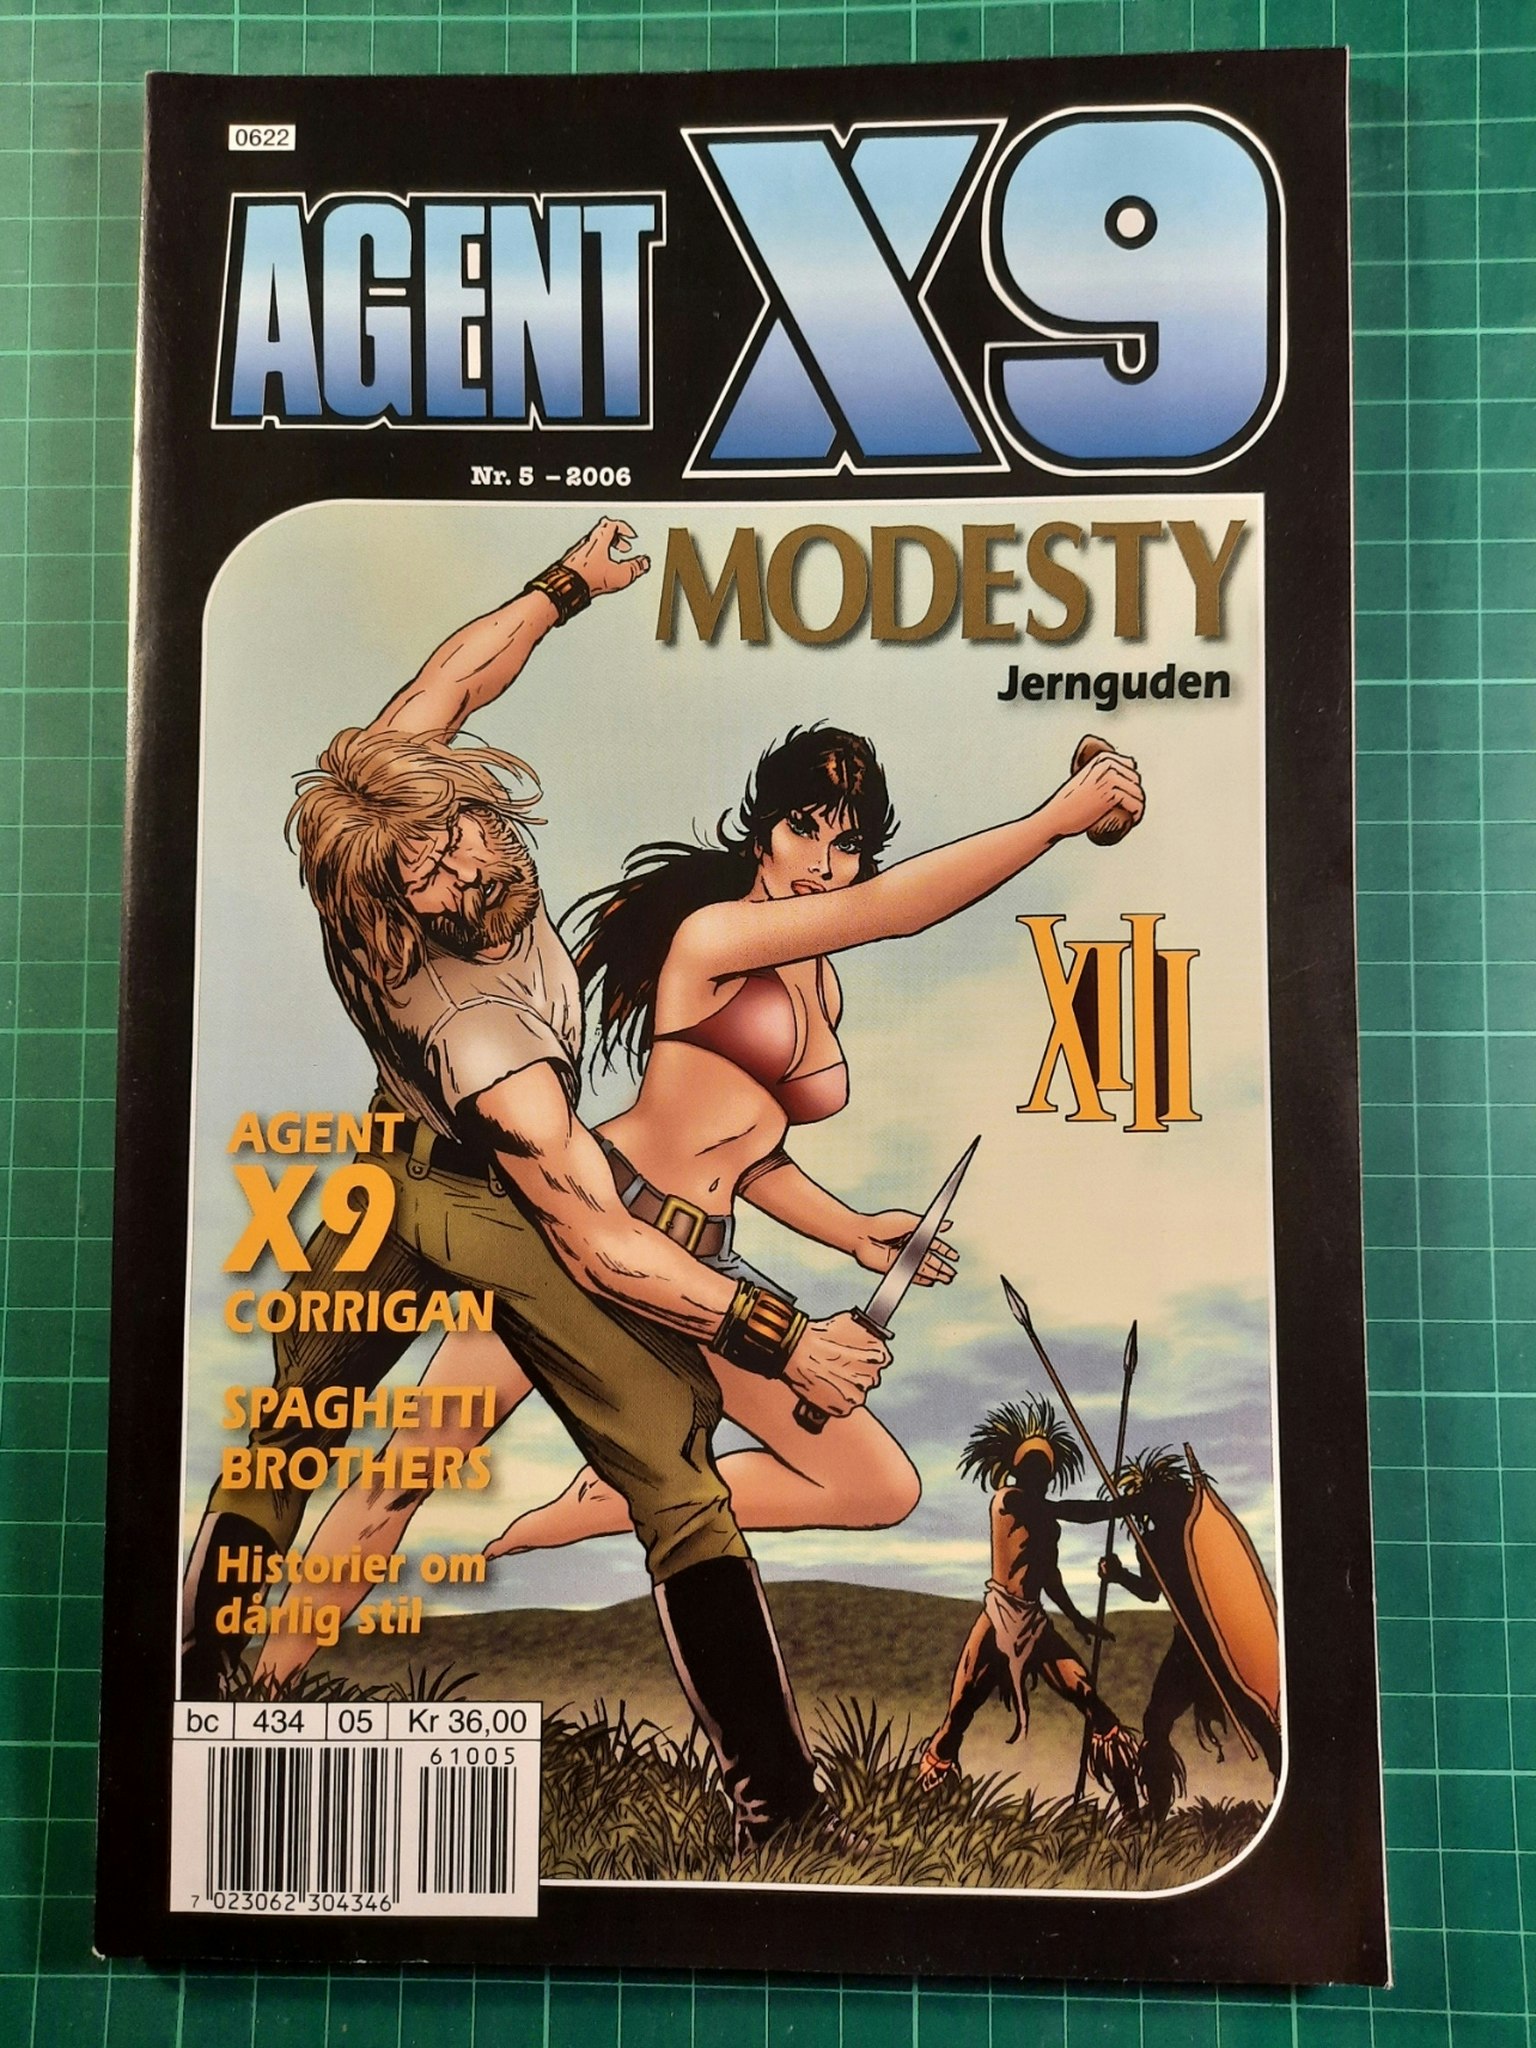 Agent X9 2006 - 05